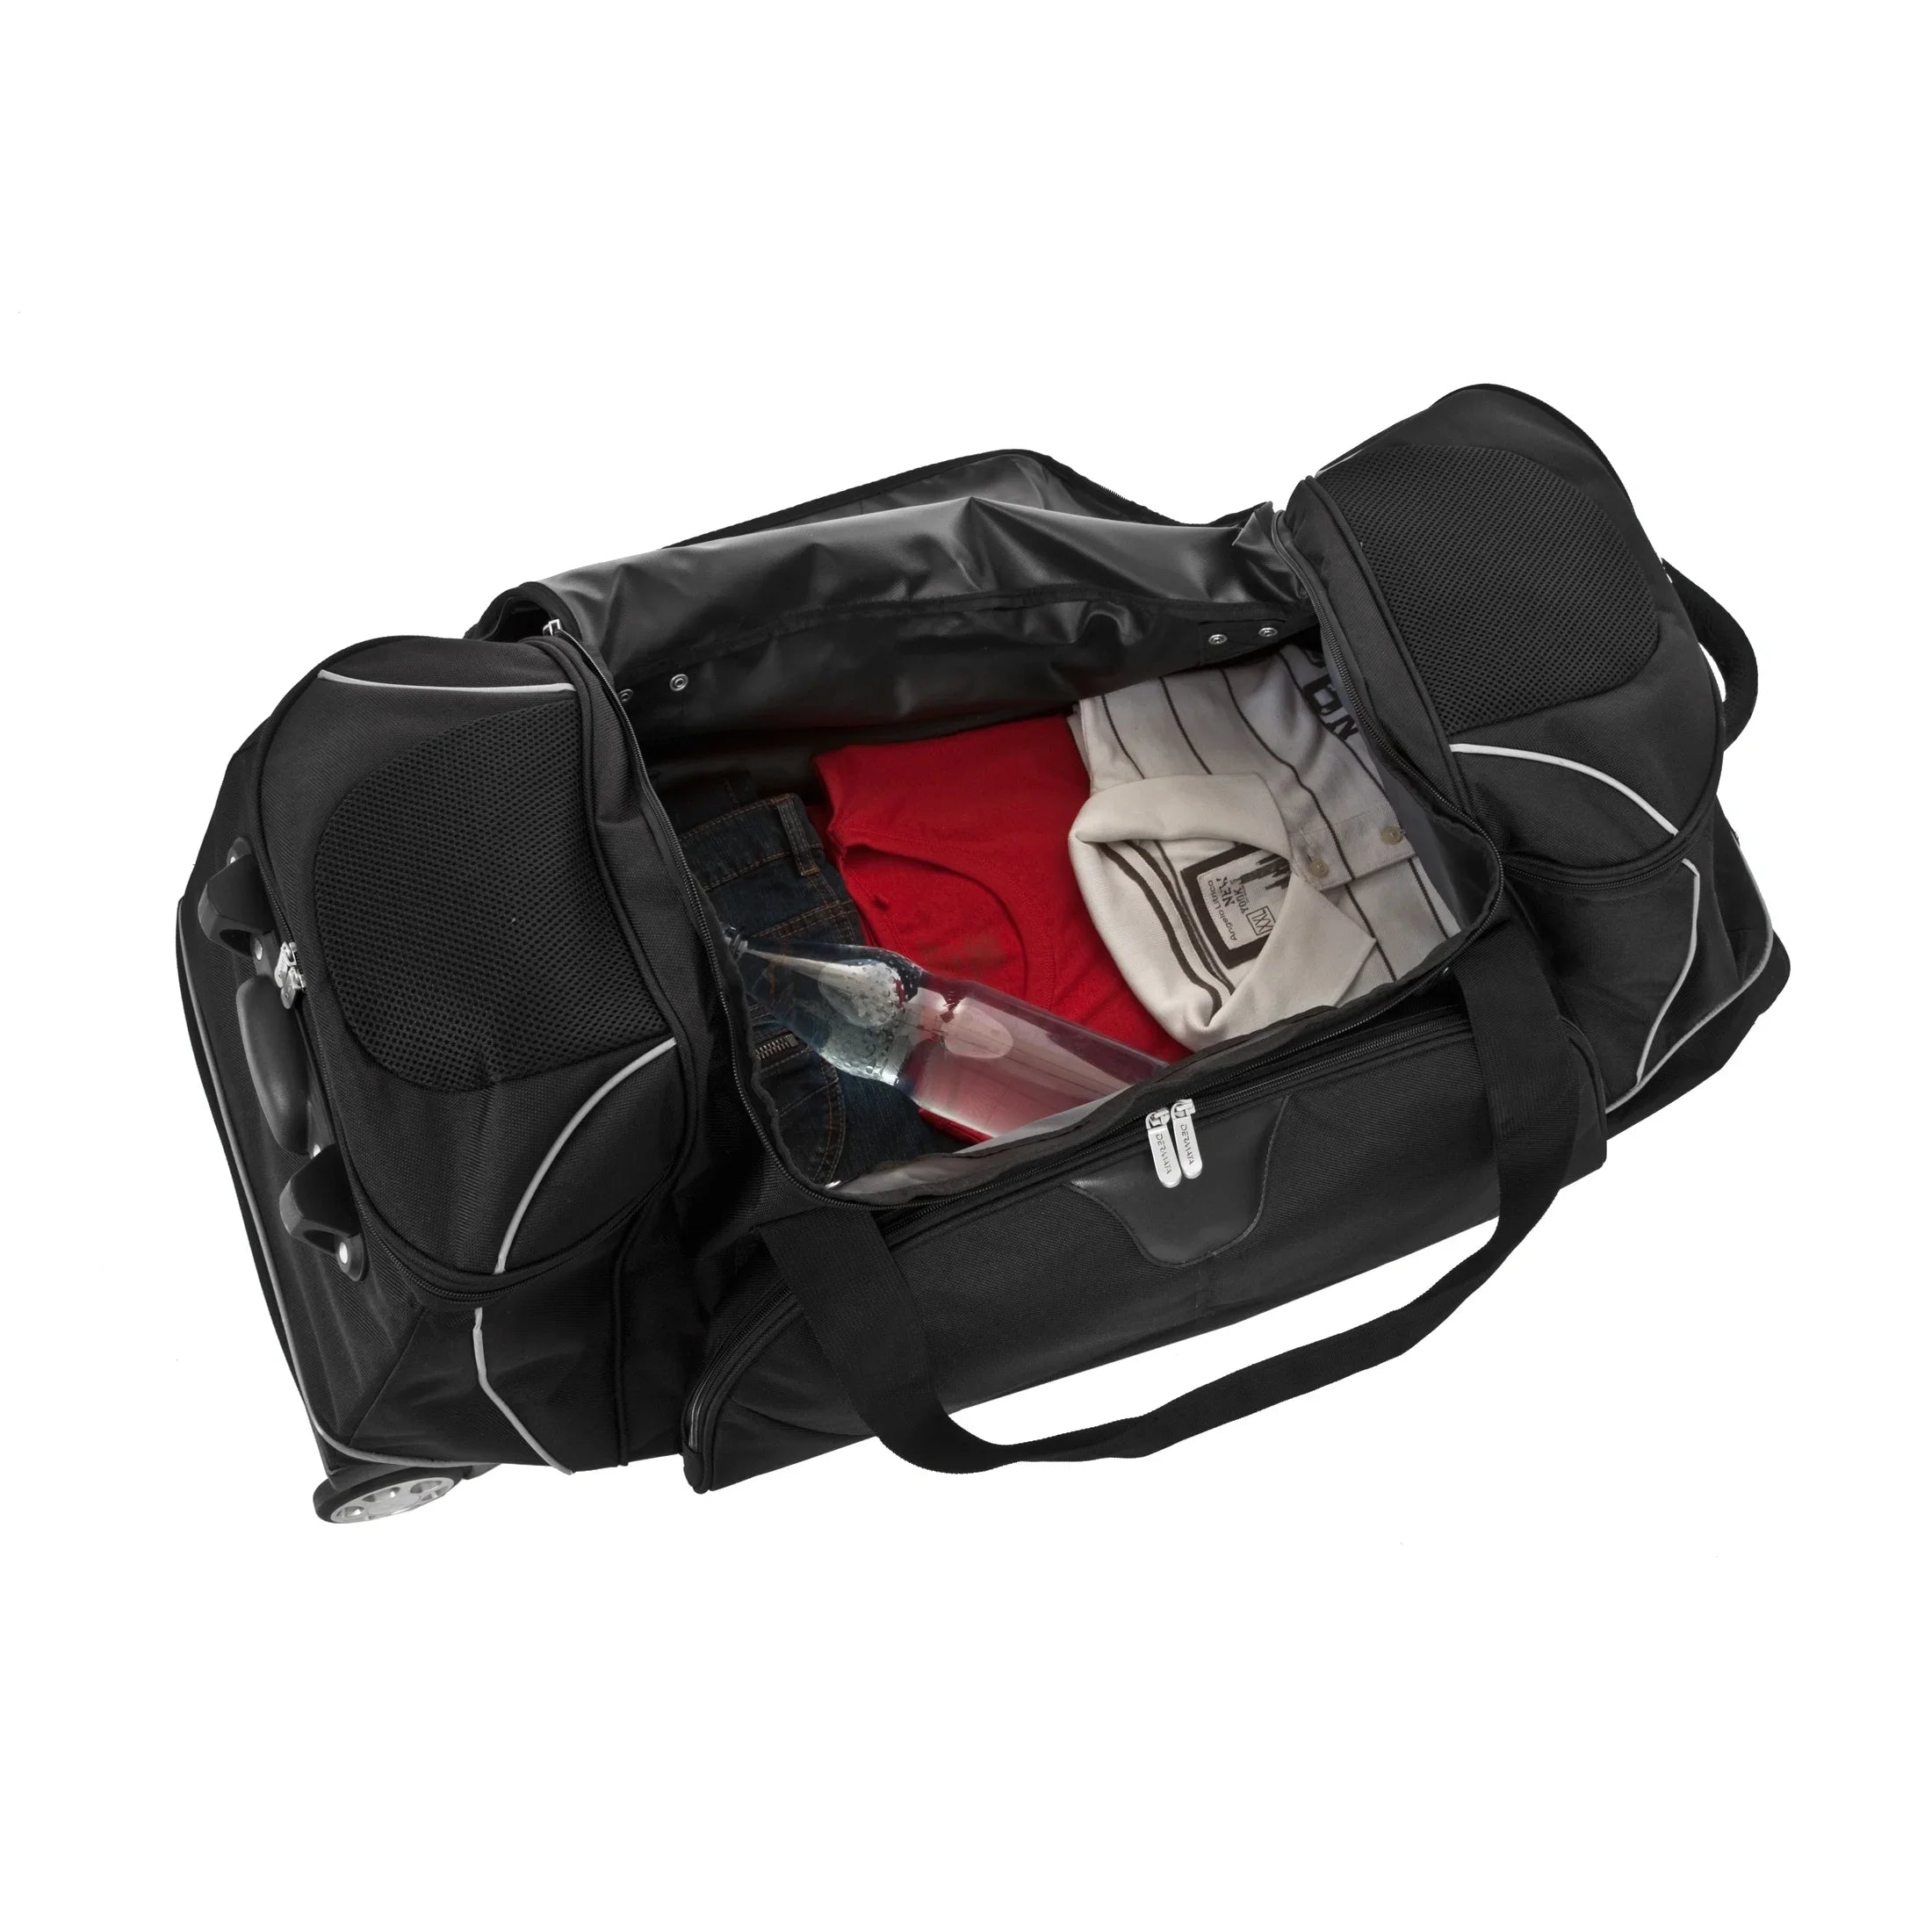 Dermata Reise Rollenreisetasche mit Rucksackfunktion 96 cm - grau